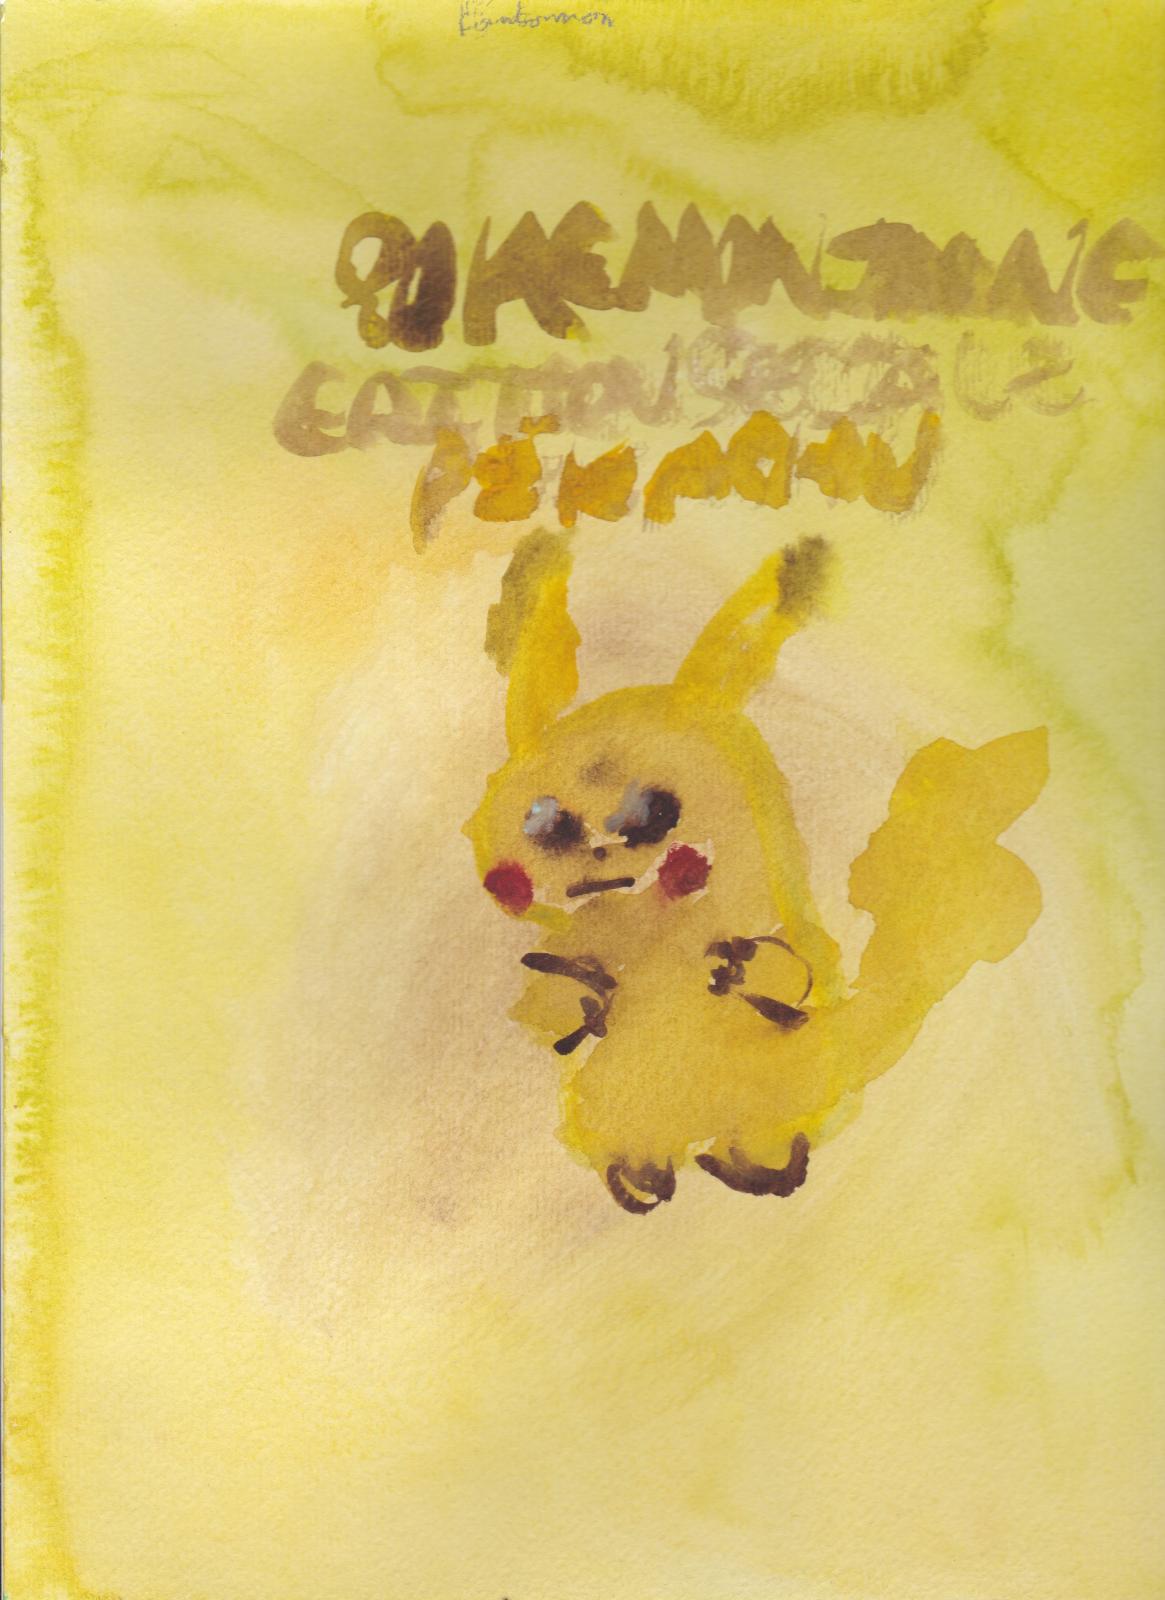 Dégradé de jaune: Pokémon version Jaune édition spéciale Pikachu (Moi) Magnifique Pikachu Rafa. ( Kanto )